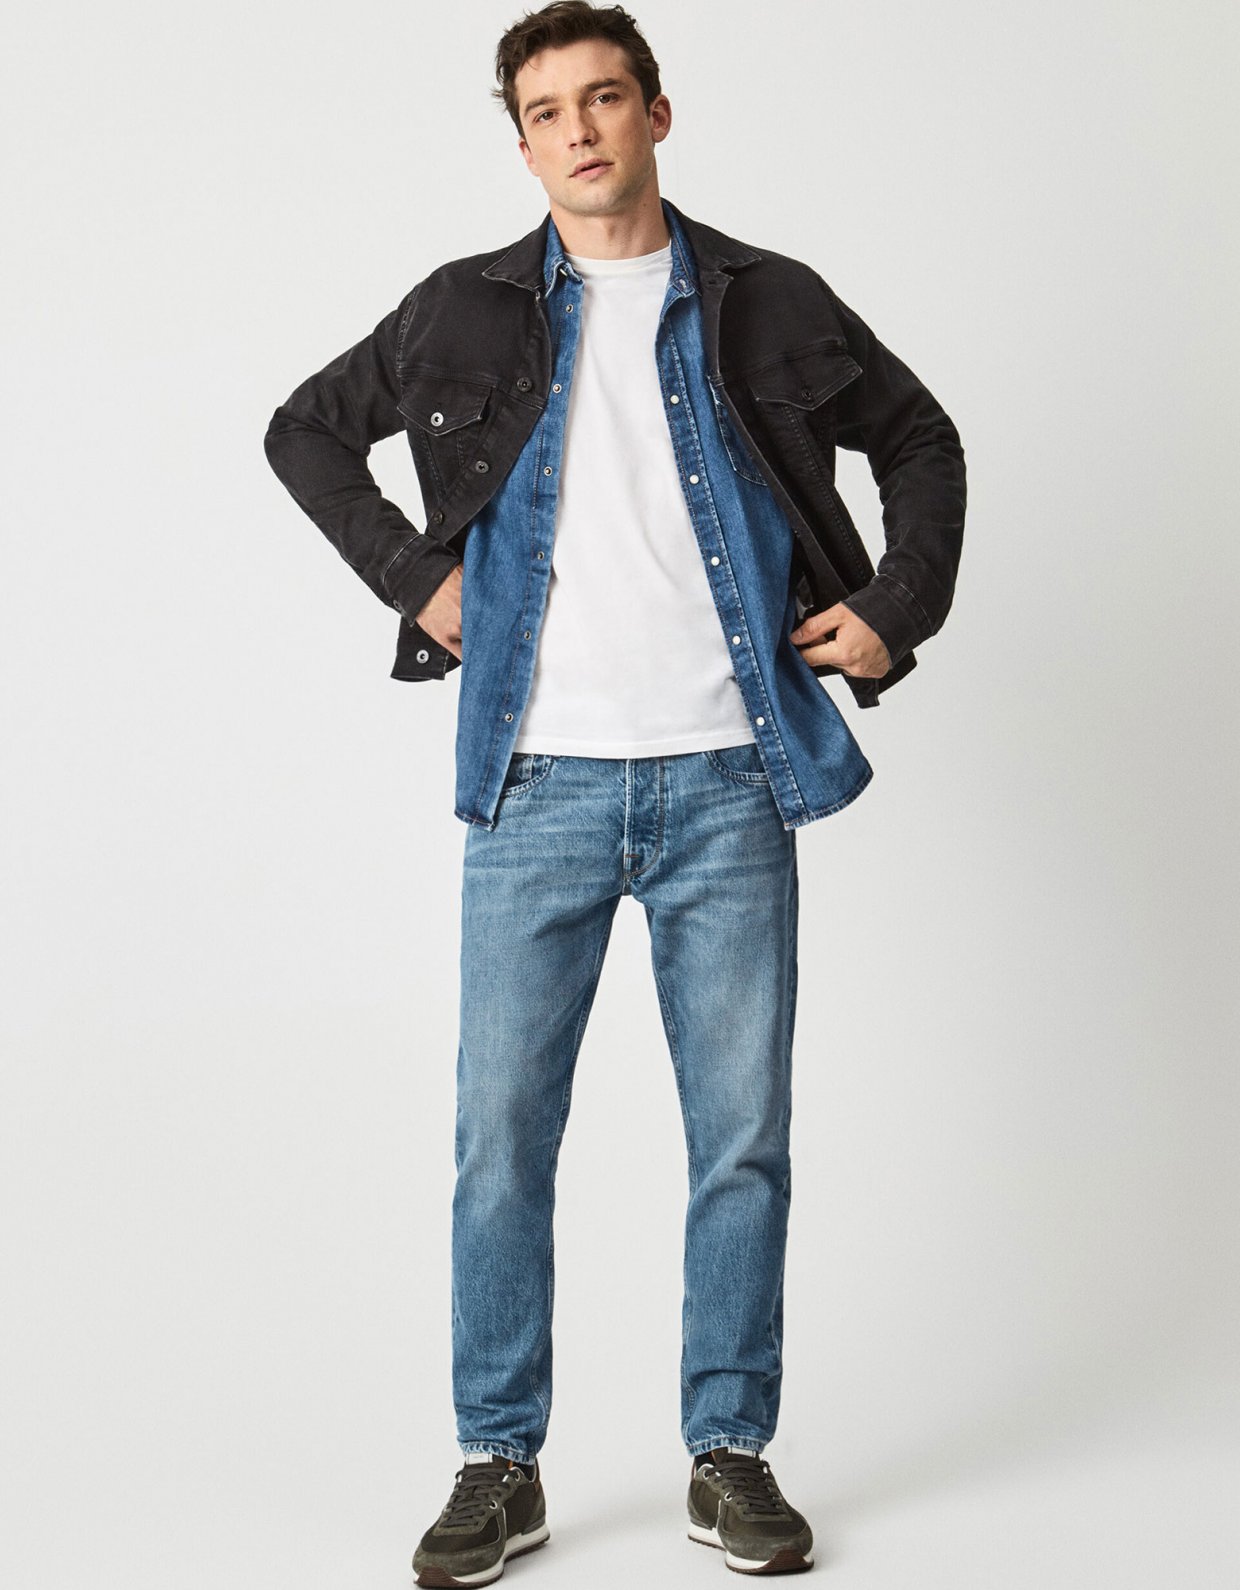 Pepe Jeans Callen crop jeans